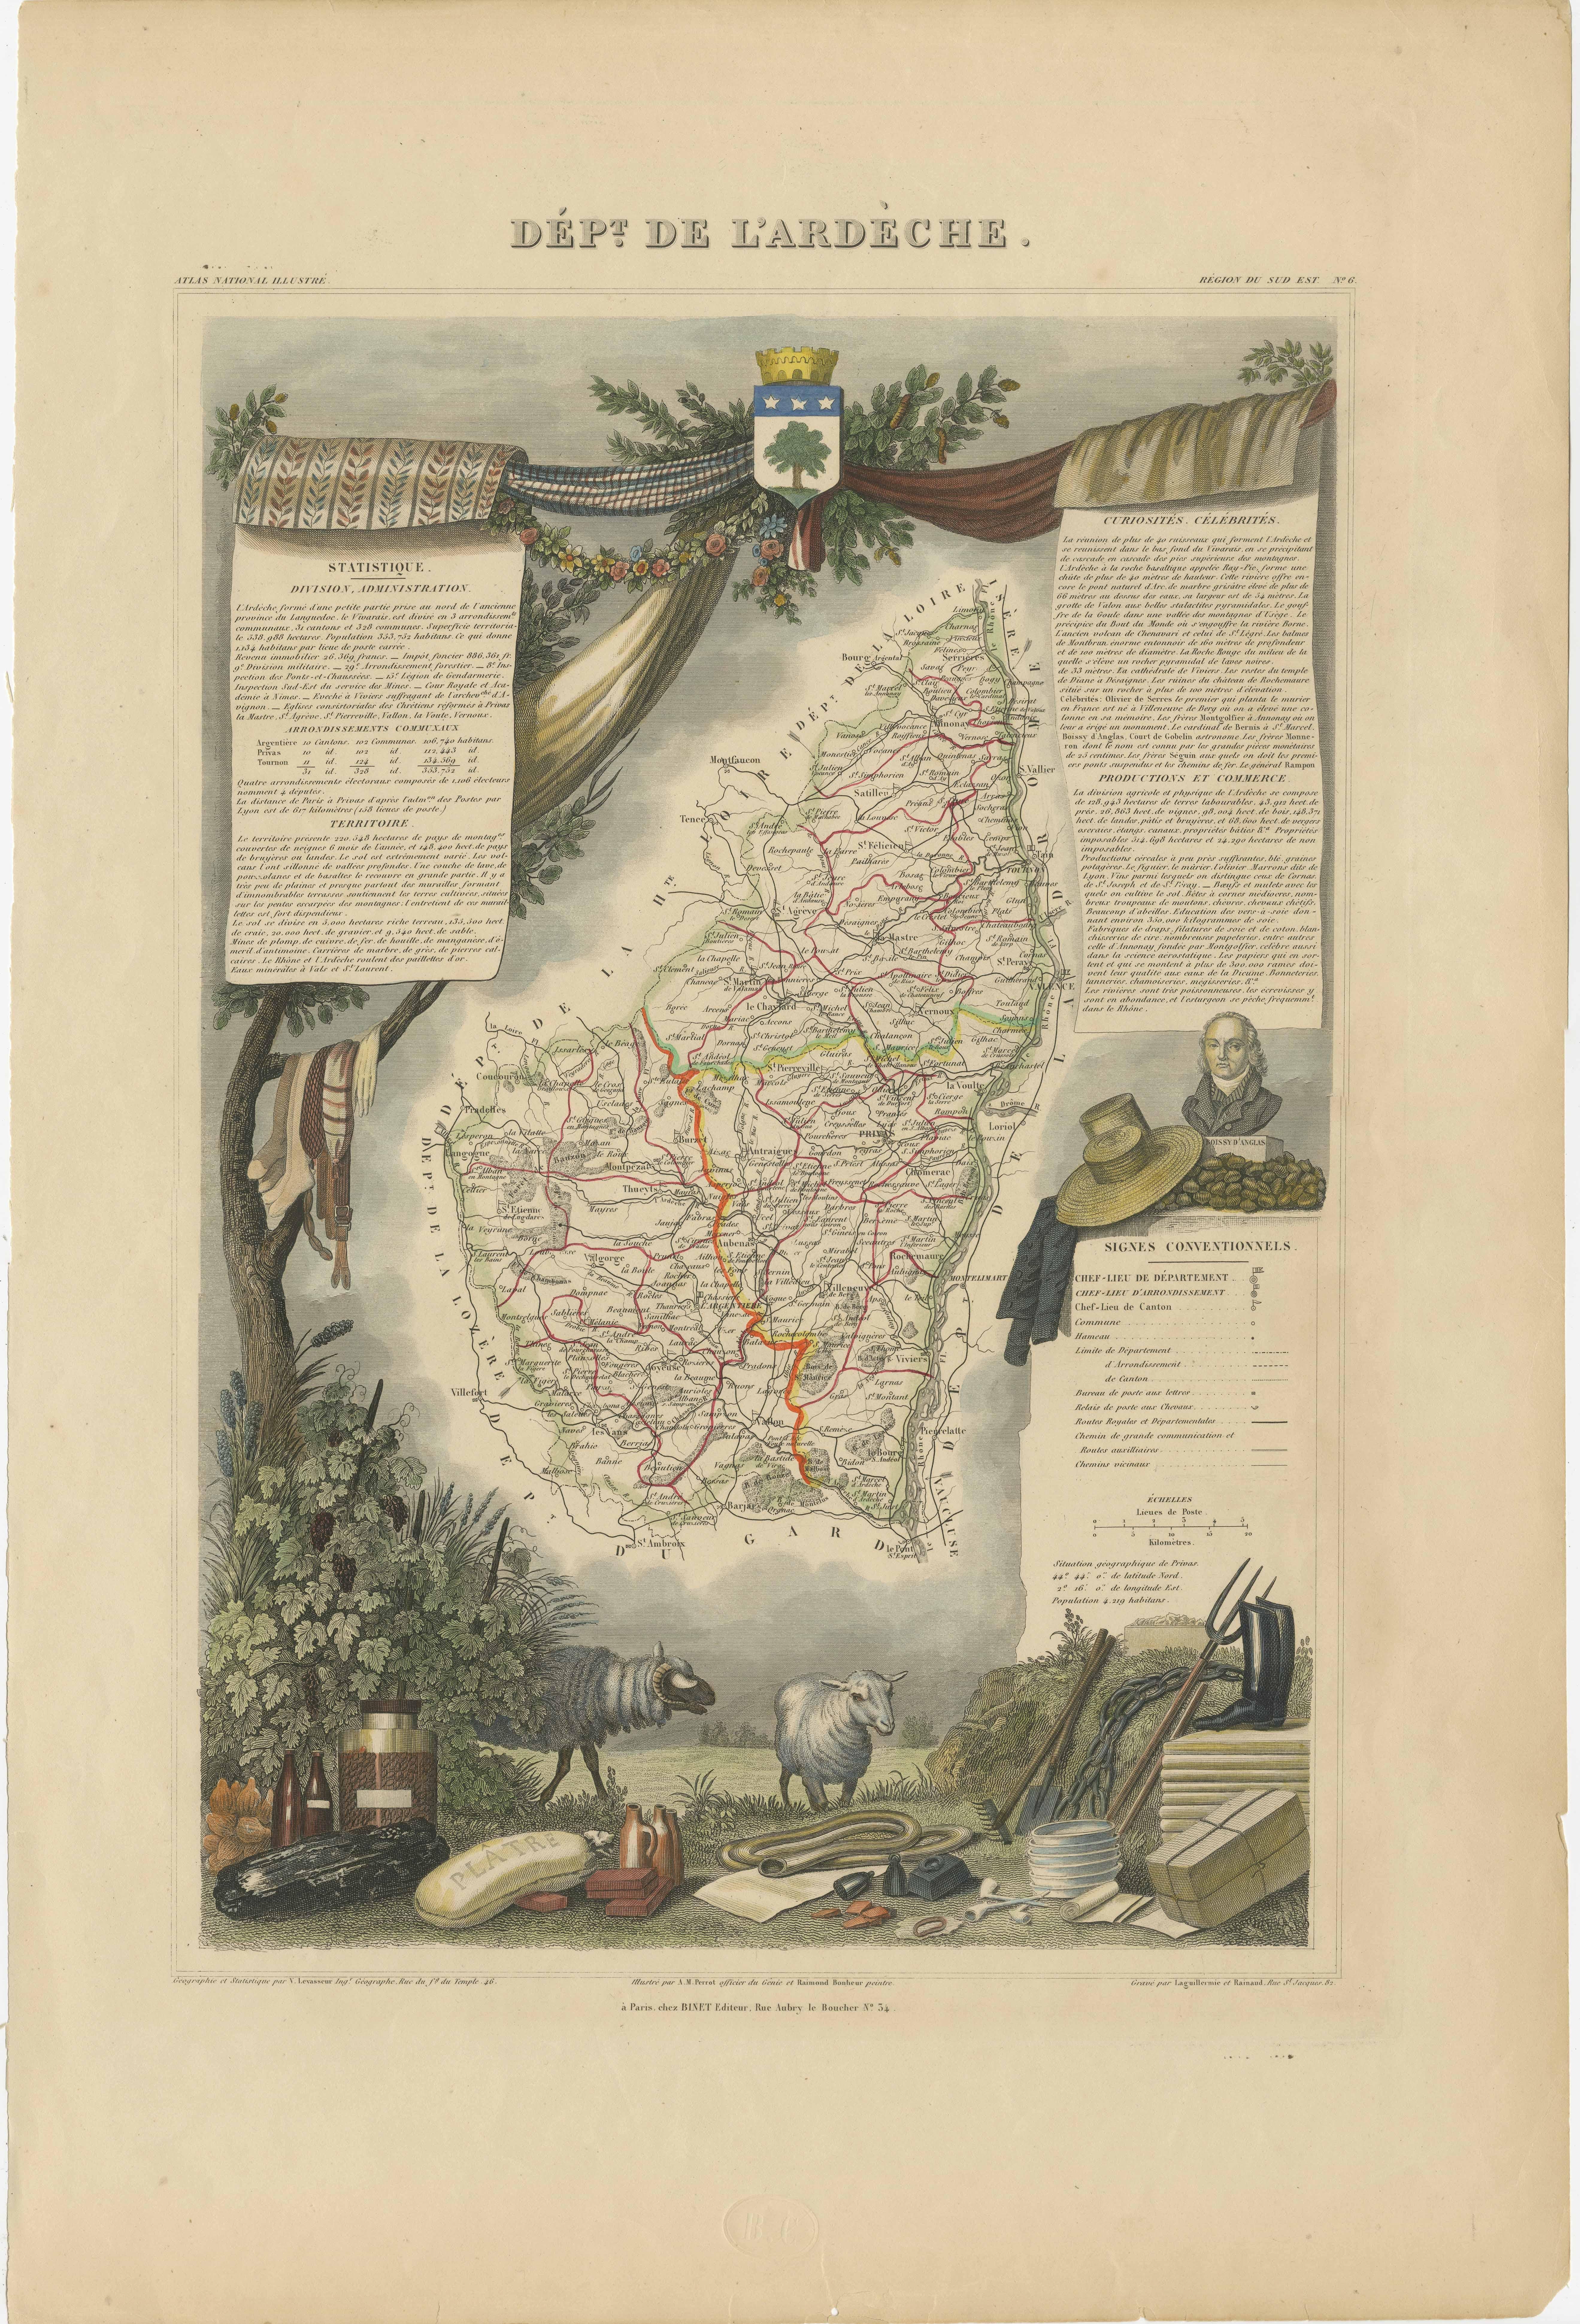 Antike Karte mit dem Titel 'Dépt. de l'Ardèche'. Karte des Departements Ardèche, Frankreich. Diese Region ist bekannt für ihre guten Weine, ihre Landwirtschaft, ihre Spirituosen und ihren Käse. Die Hauptstadt ist Privas. Das Ganze ist von